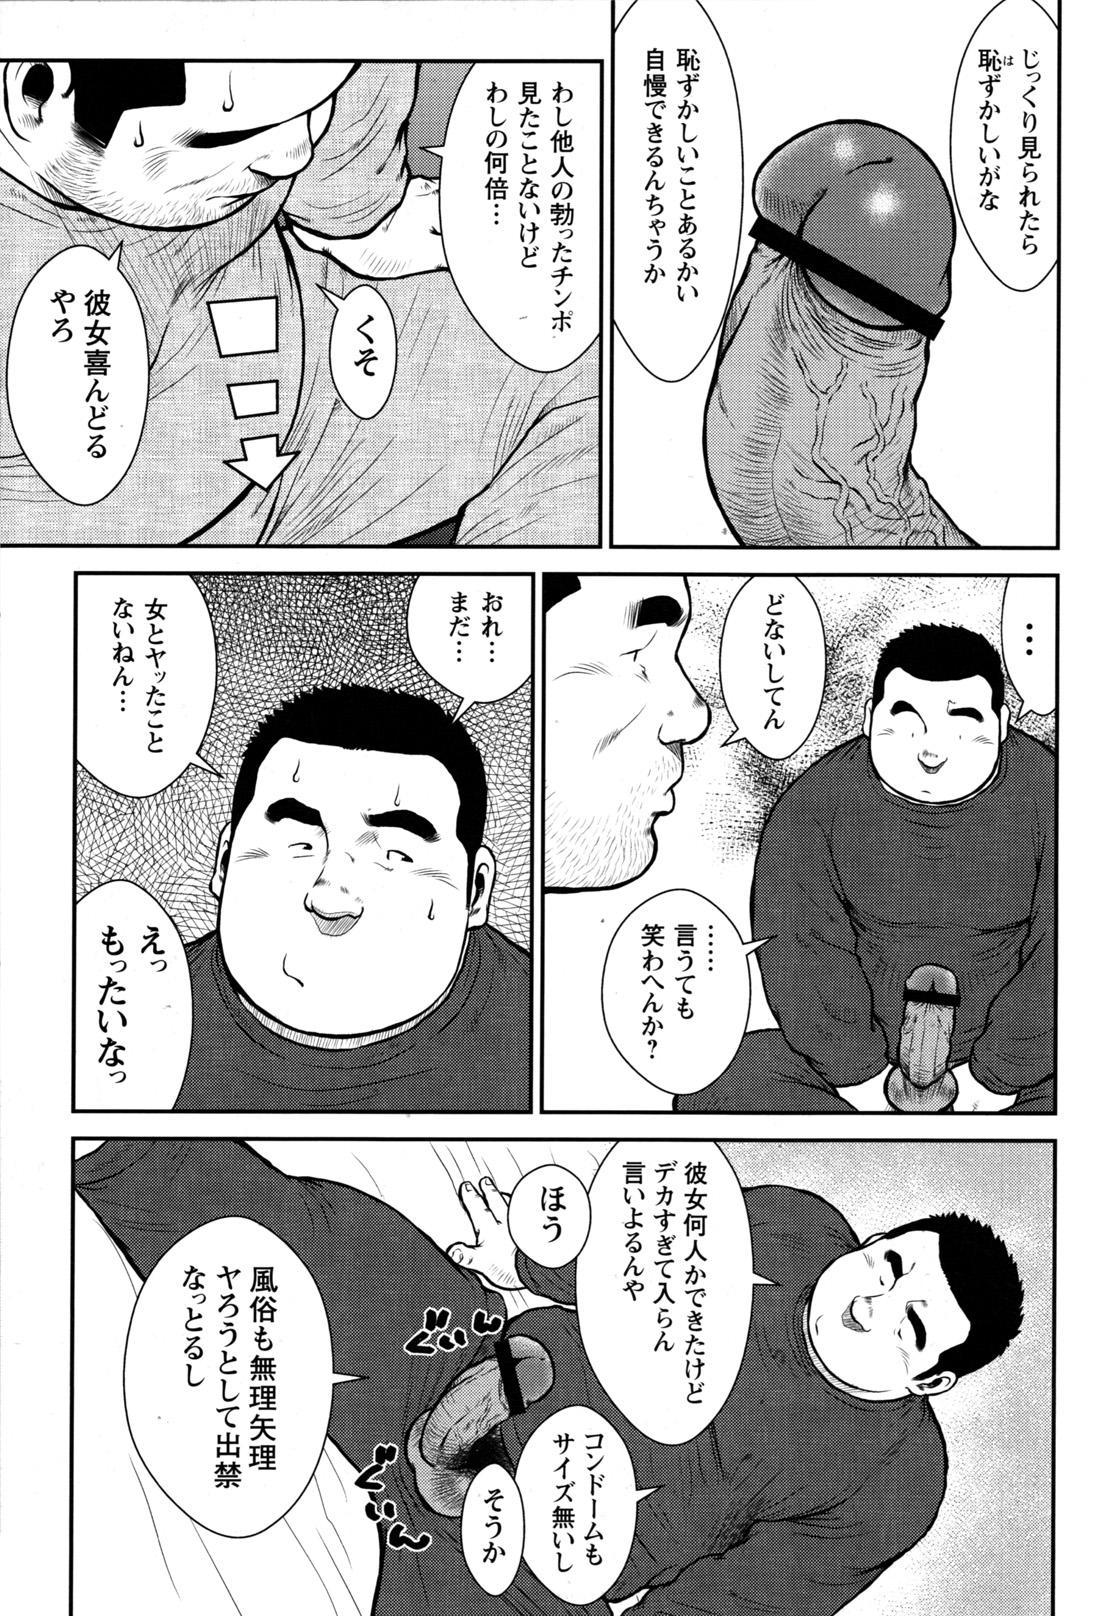 Comic G-men Gaho No.09 Gacchibi Zeme 106